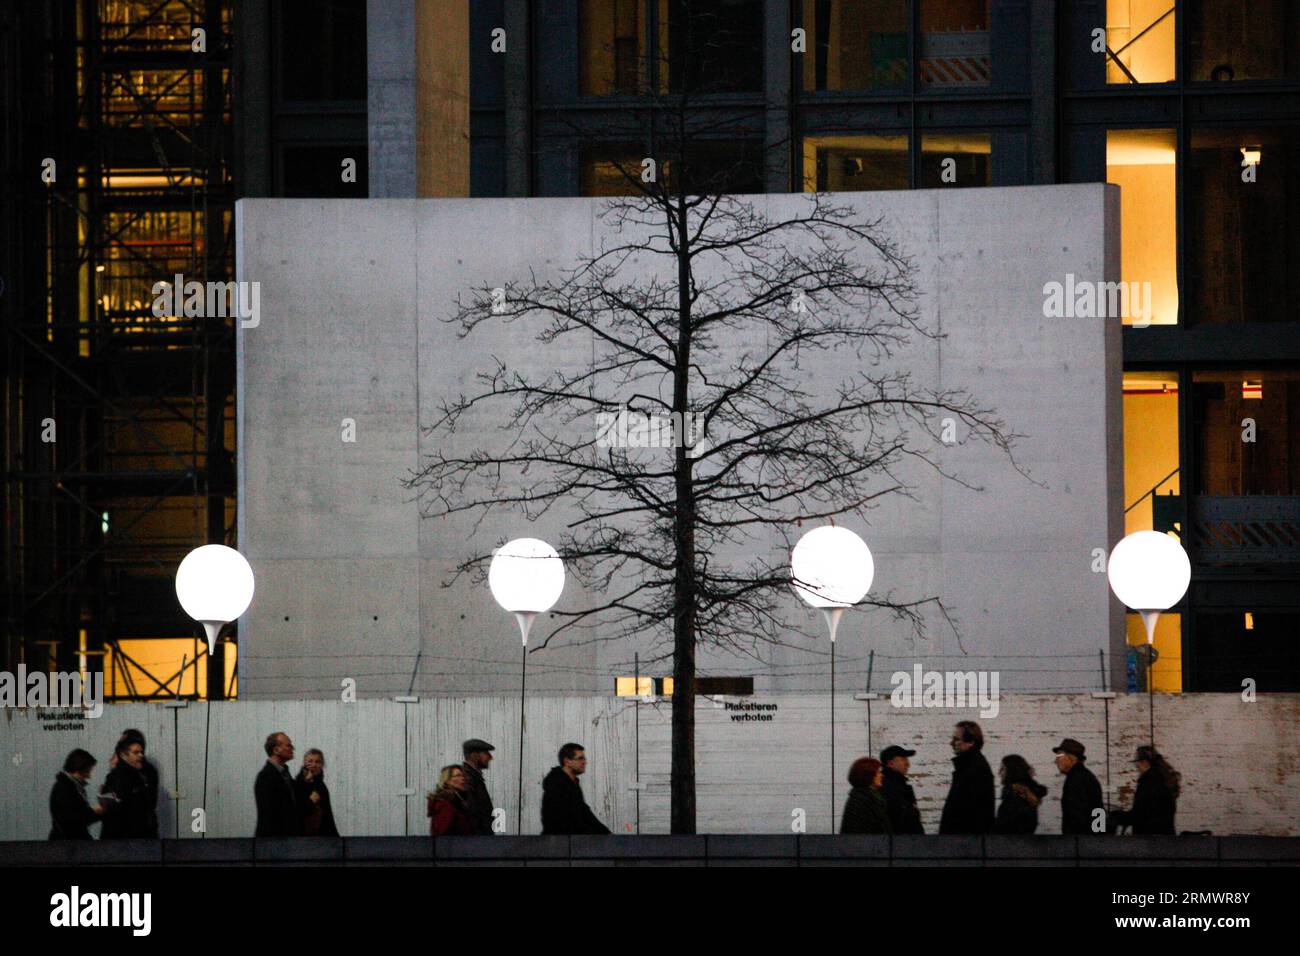 Les visiteurs voient une installation lumineuse de ballons le long du parcours de l'ancien mur de Berlin sur un site commémoratif du mur de Berlin à Berlin, en Allemagne, le 8 novembre 2014. Quelque 8000 ballons blancs lumineux ont été installés à Berlin du 7 au 9 novembre pour commémorer le 25e anniversaire de la chute du mur de Berlin. (Dzl) ALLEMAGNE-BERLIN-BALLONS-MUR DE BERLIN ZhangxFan PUBLICATIONxNOTxINxCHN visiteurs Voir une installation lumineuse de ballons le long du cours de l'ancien mur de Berlin SUR un site commémoratif du mur de Berlin Allemagne LE 8 2014 novembre quelque 8000 ballons blancs lumineux ont été placés à Berlin du 7 au 9 novembre pour commemor Banque D'Images